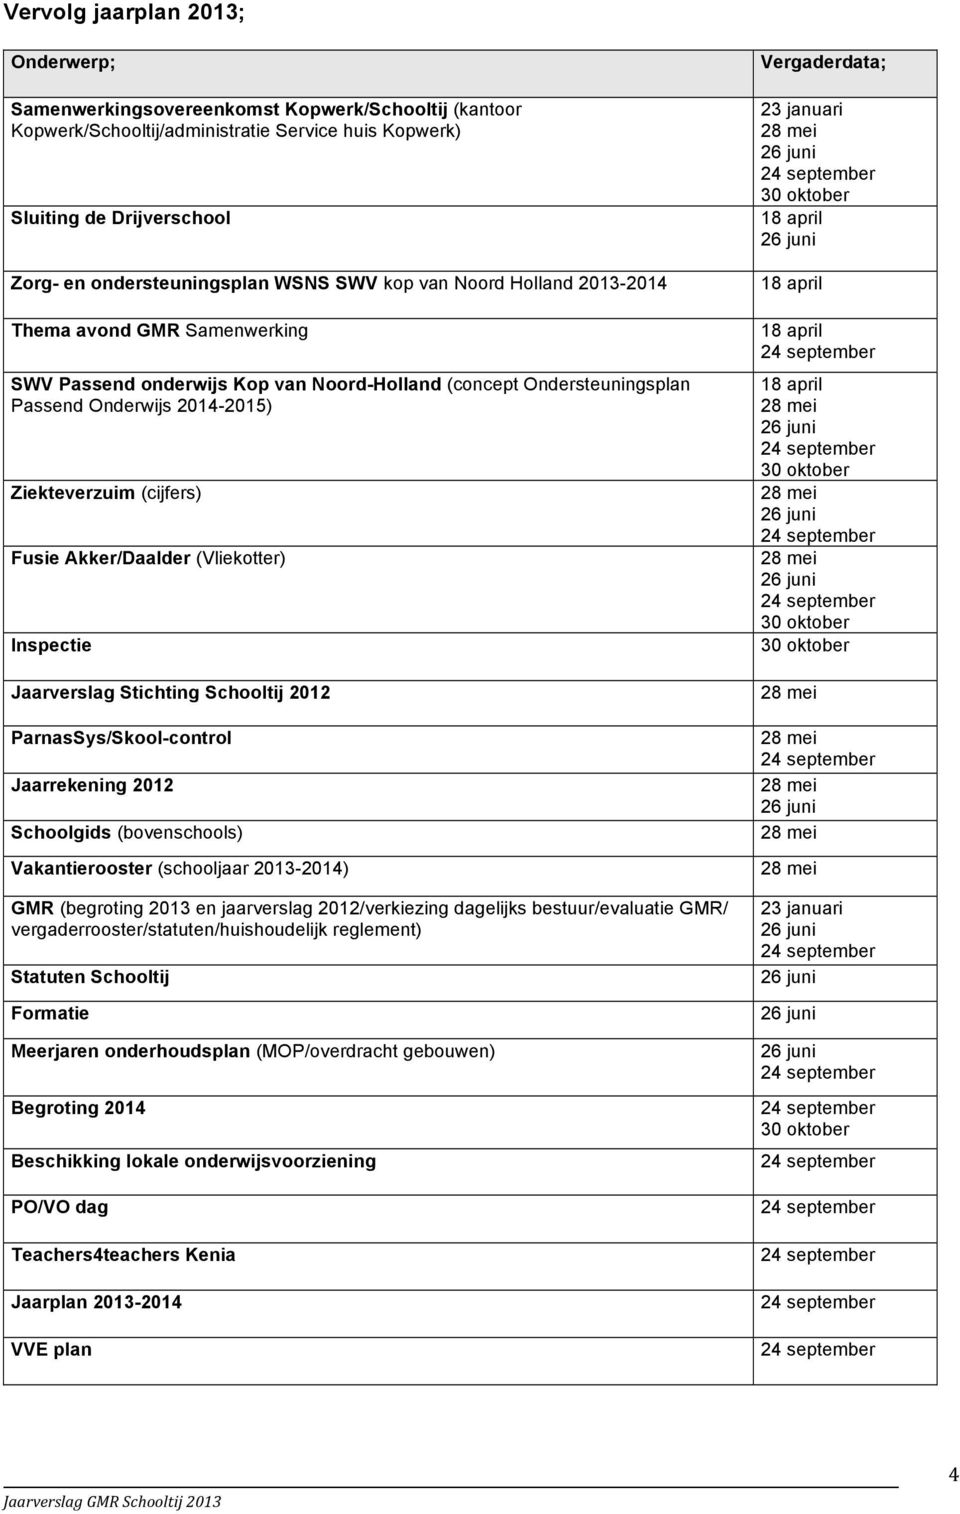 Akker/Daalder (Vliekotter) Inspectie Jaarverslag Stichting Schooltij 2012 ParnasSys/Skool-control Jaarrekening 2012 Schoolgids (bovenschools) Vakantierooster (schooljaar 2013-2014) GMR (begroting